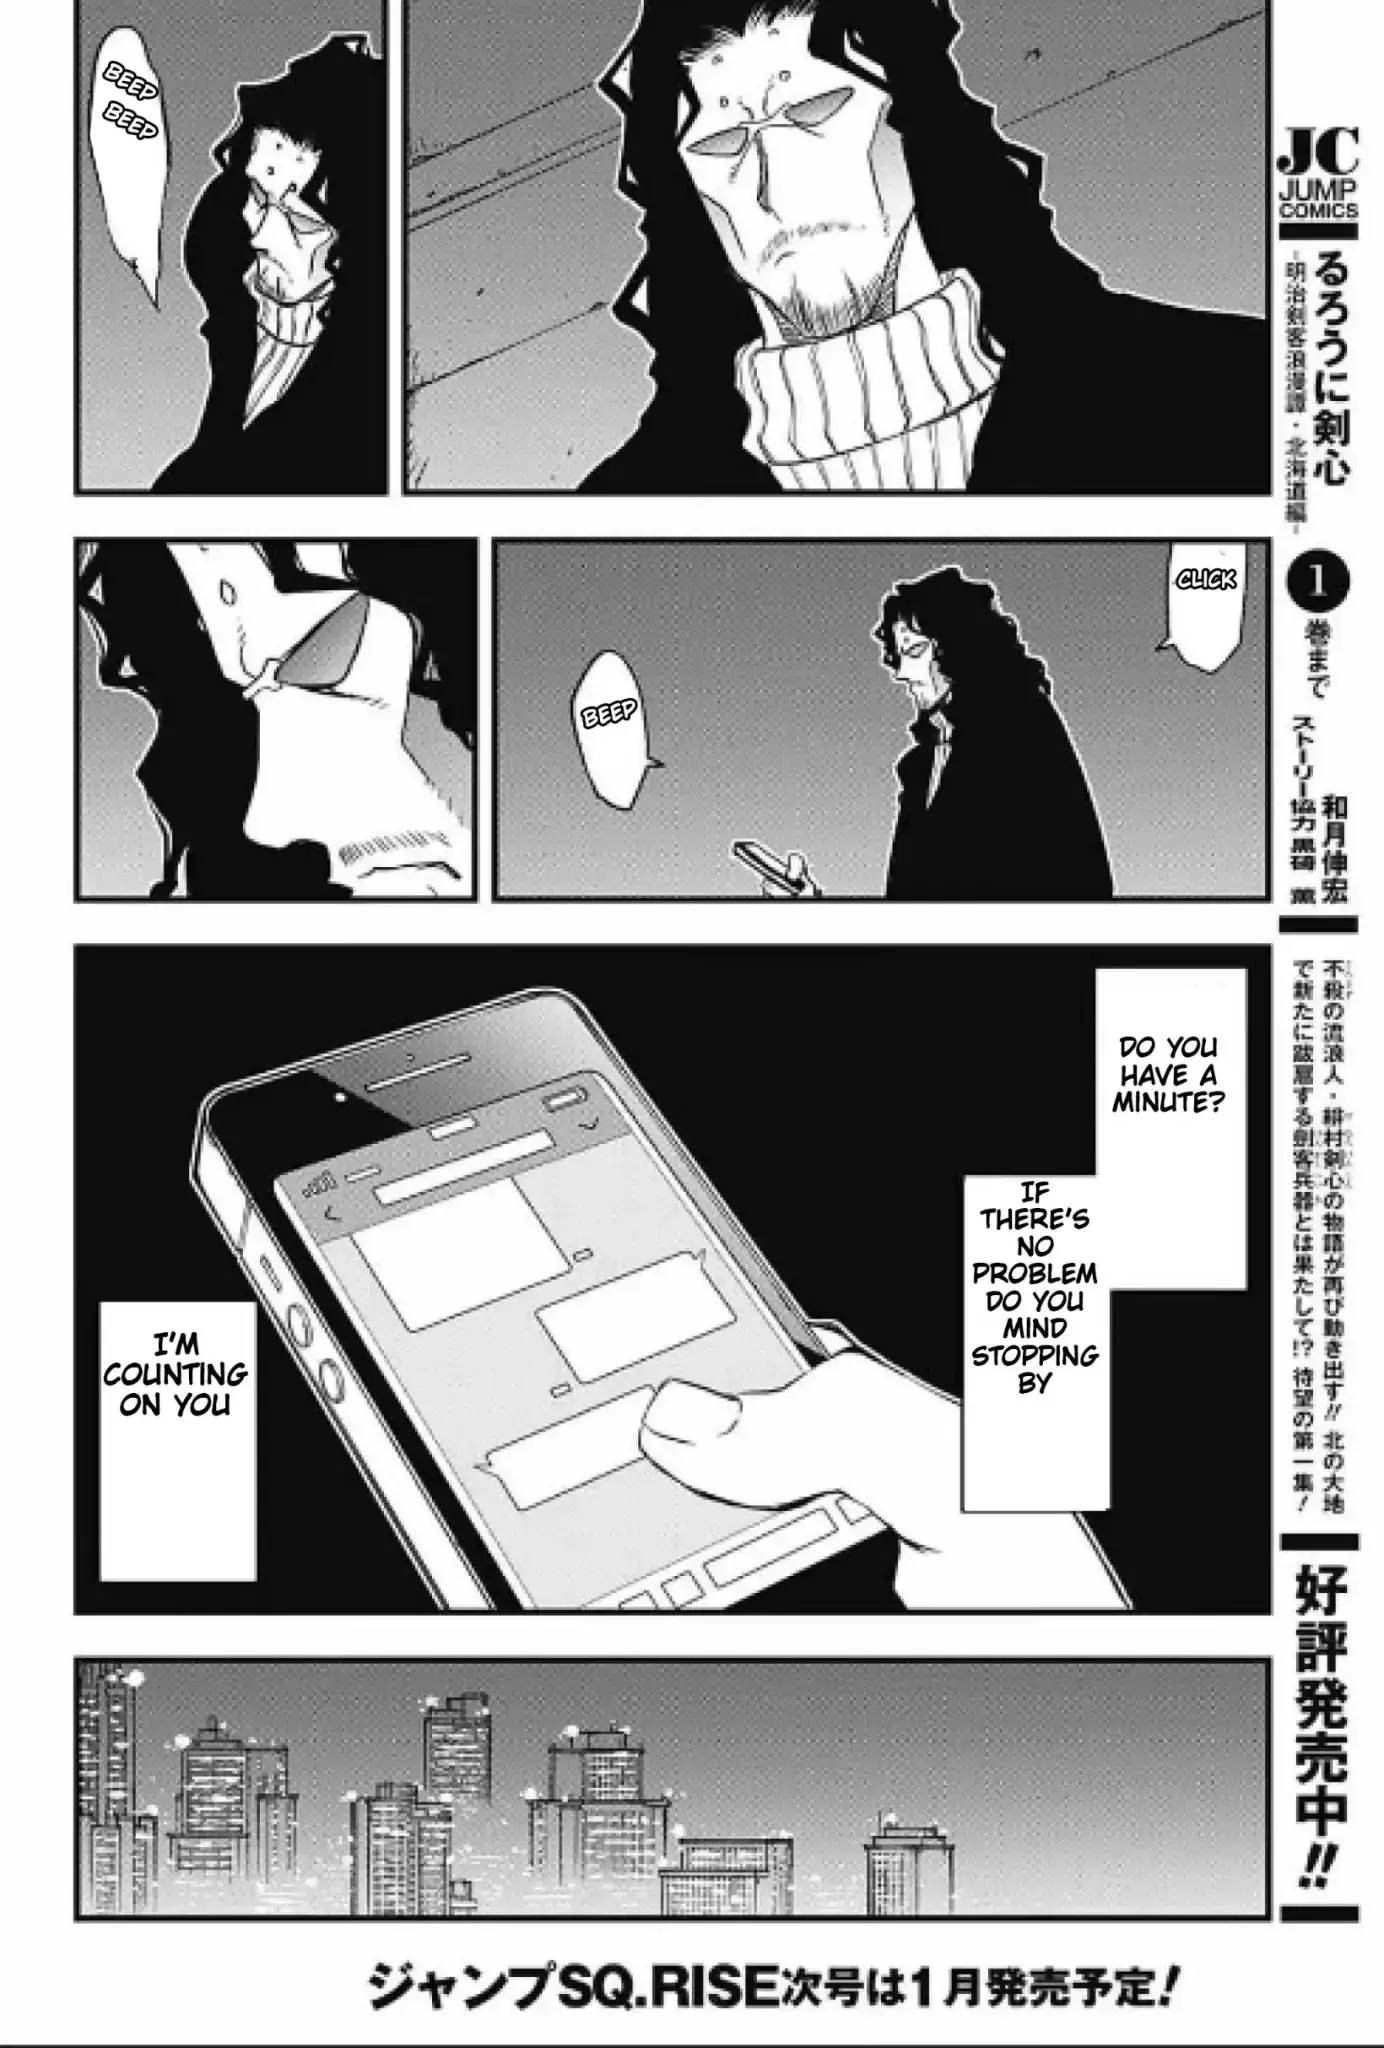 Kekkai Sensen - Back 2 Back - 16 page 99